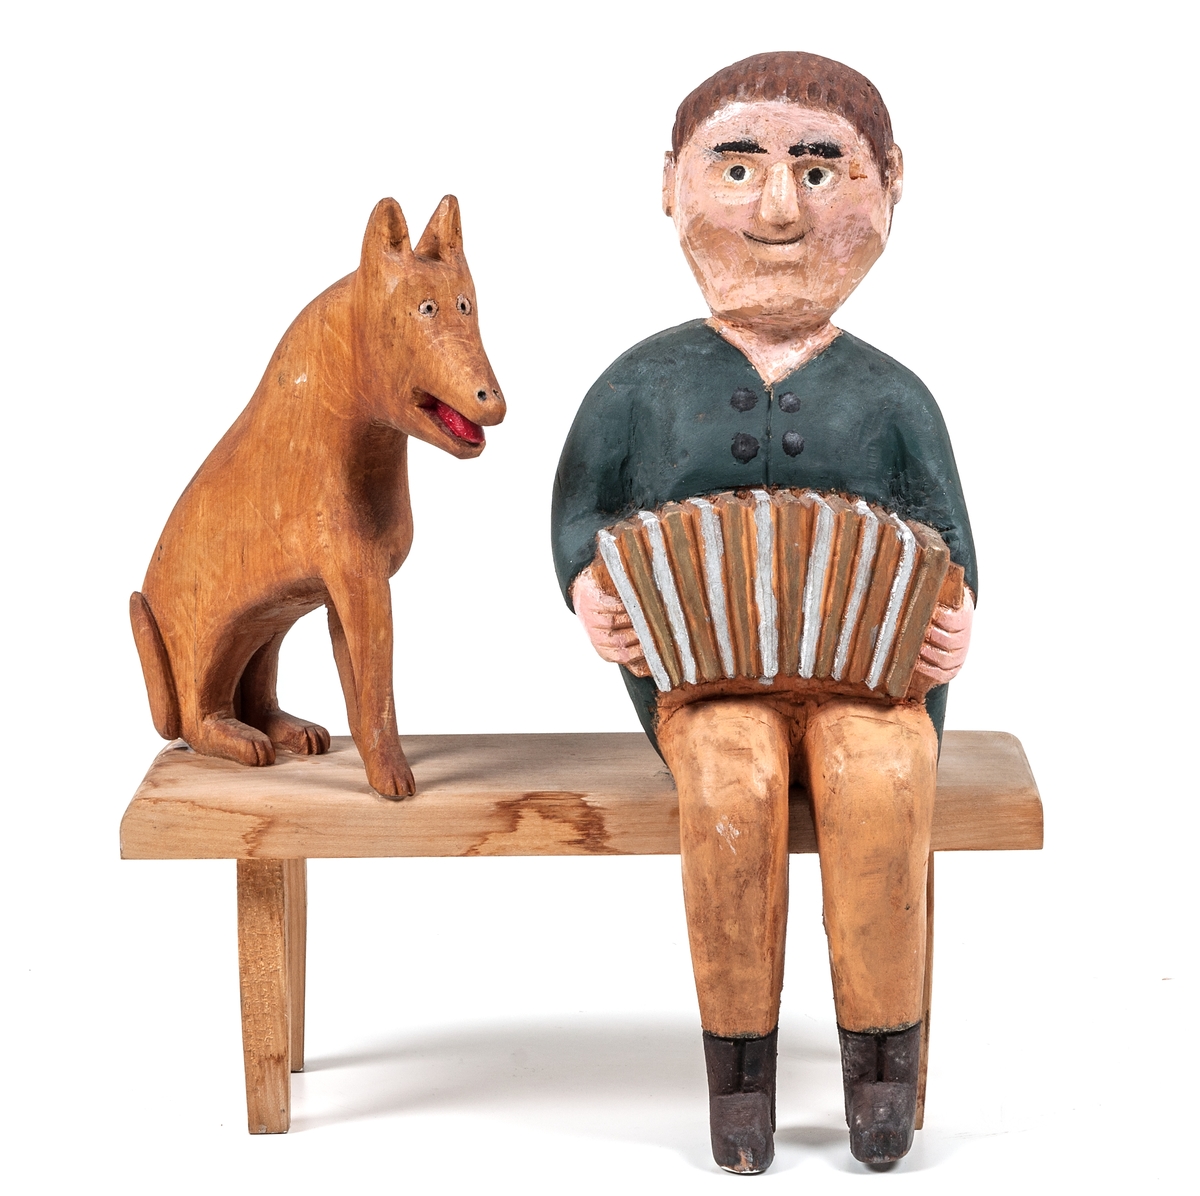 Träskulptur "Dragspelare" av Per Mörk. Skulpturen består av sittande dragspelare och sittande hund på träbänk.